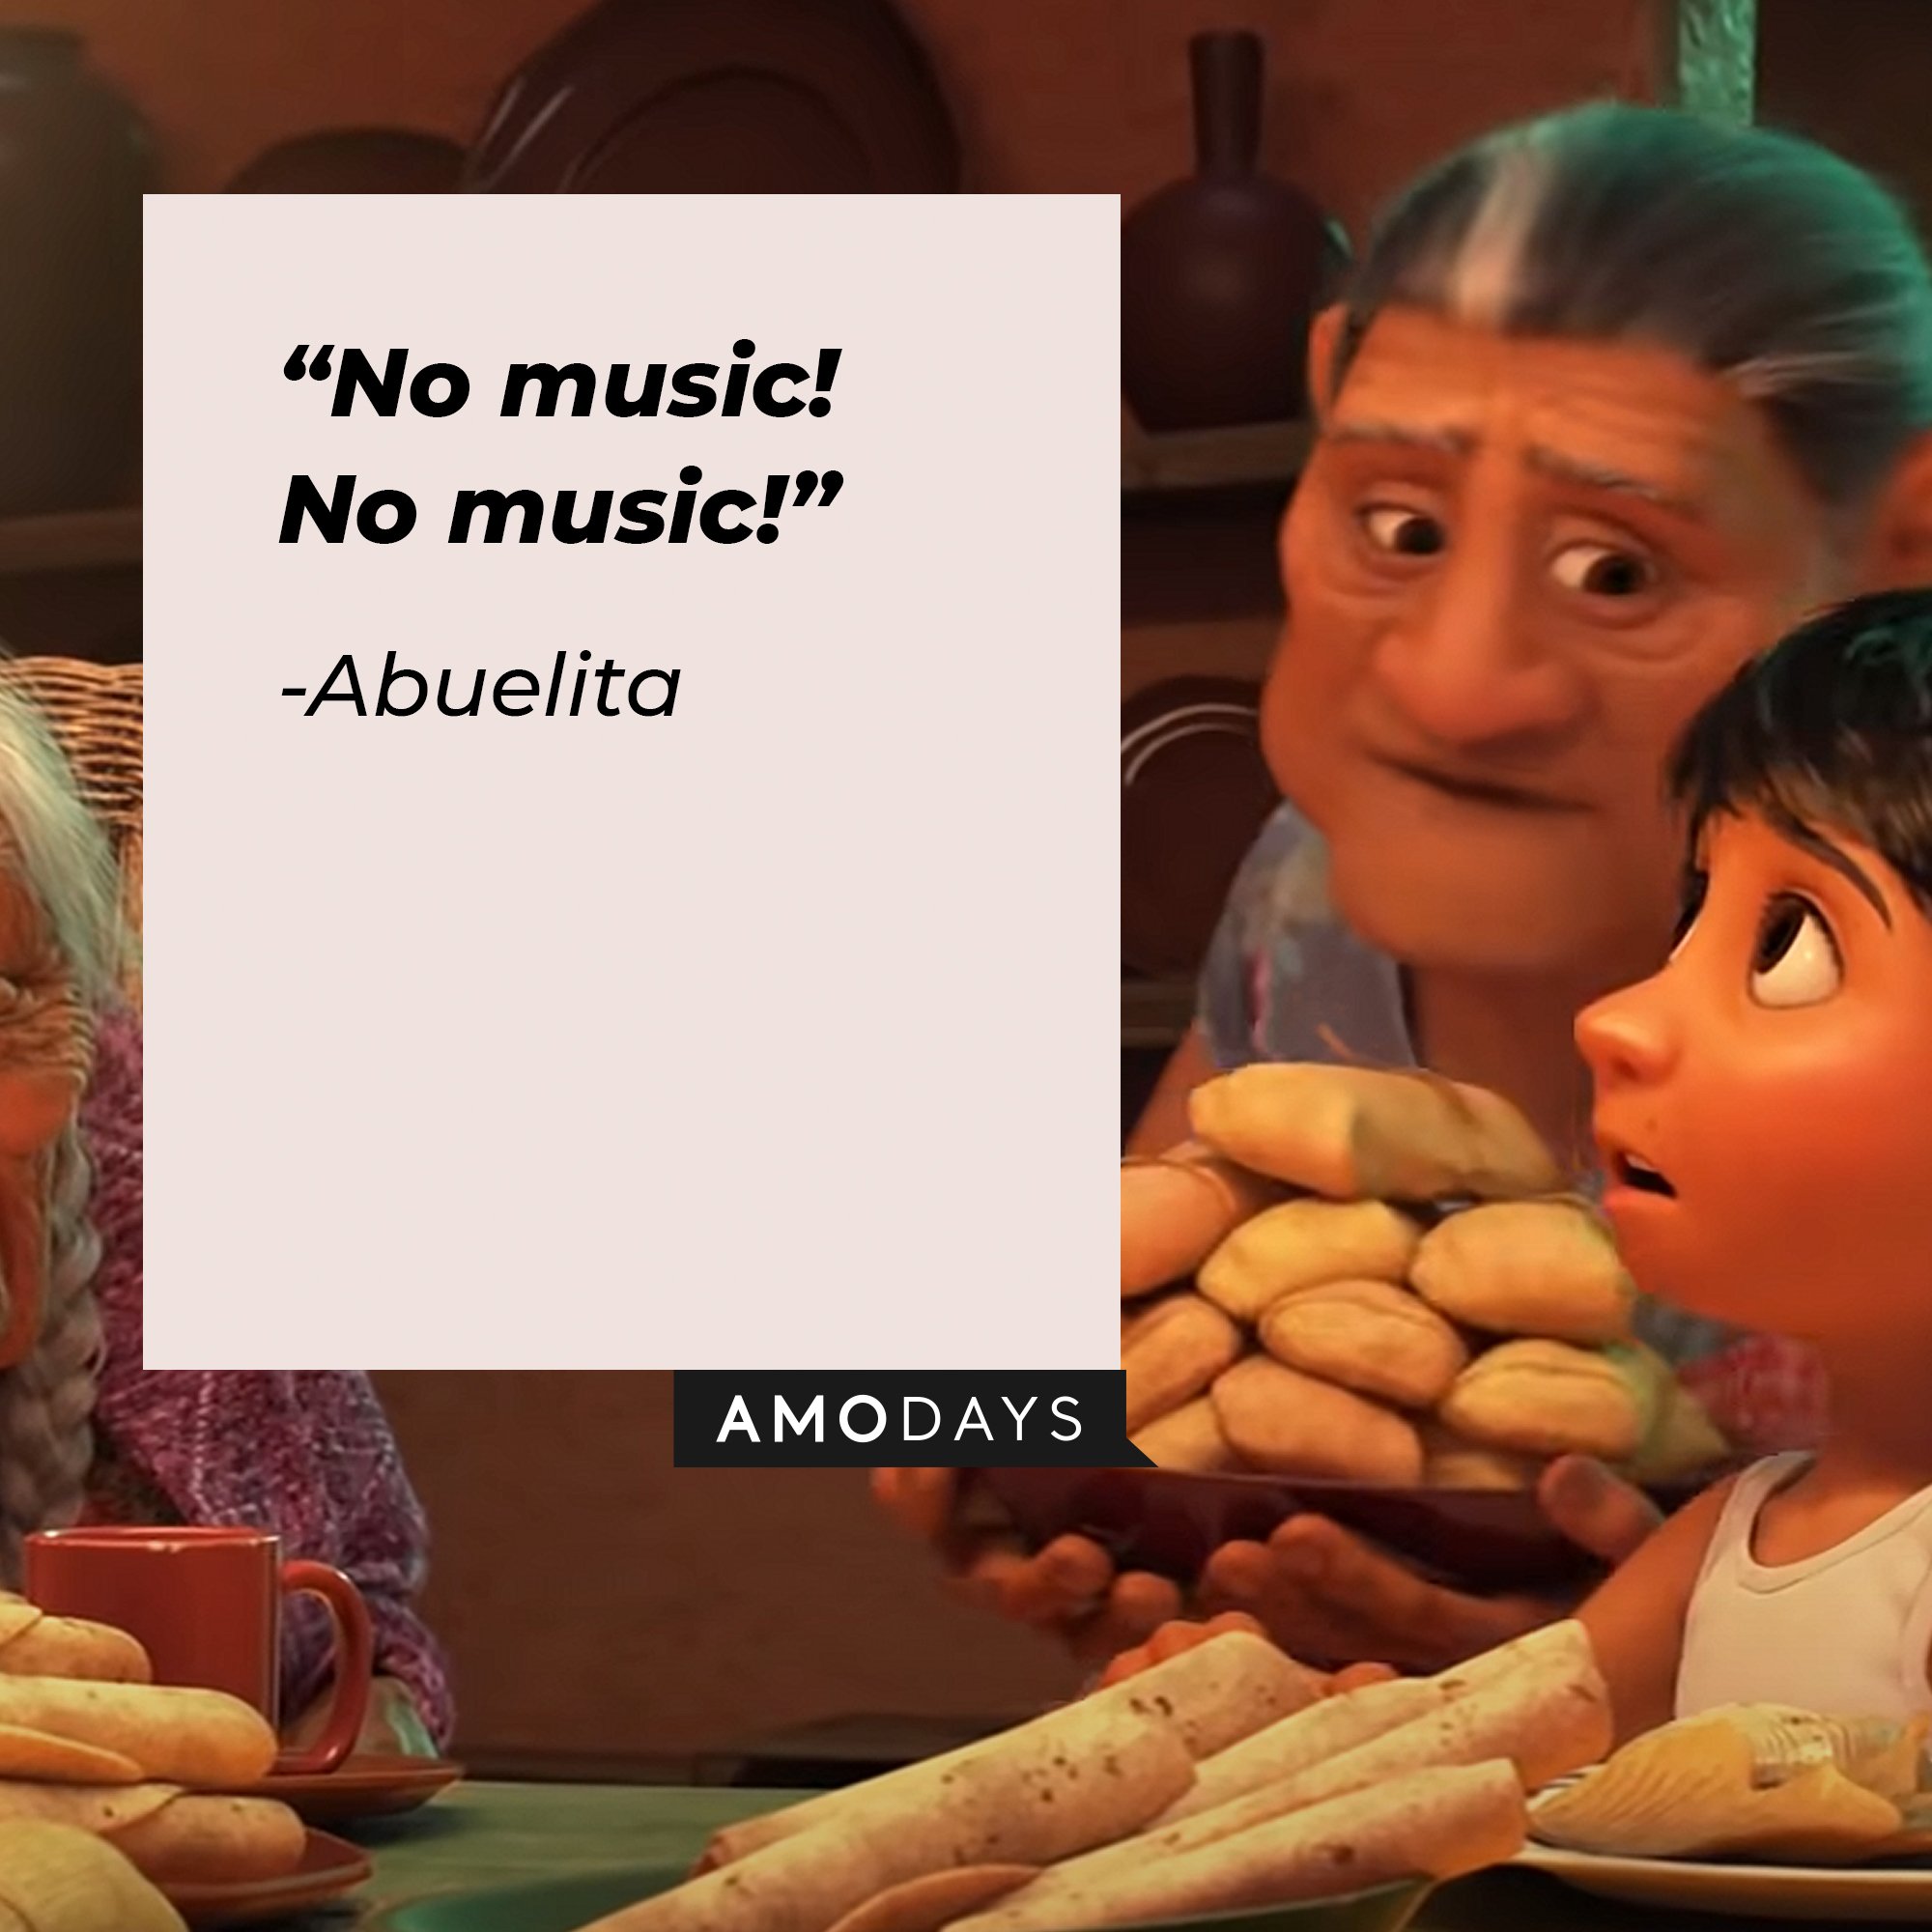 Abuelita's quote: “No music! No music!” | Image: AmoDays